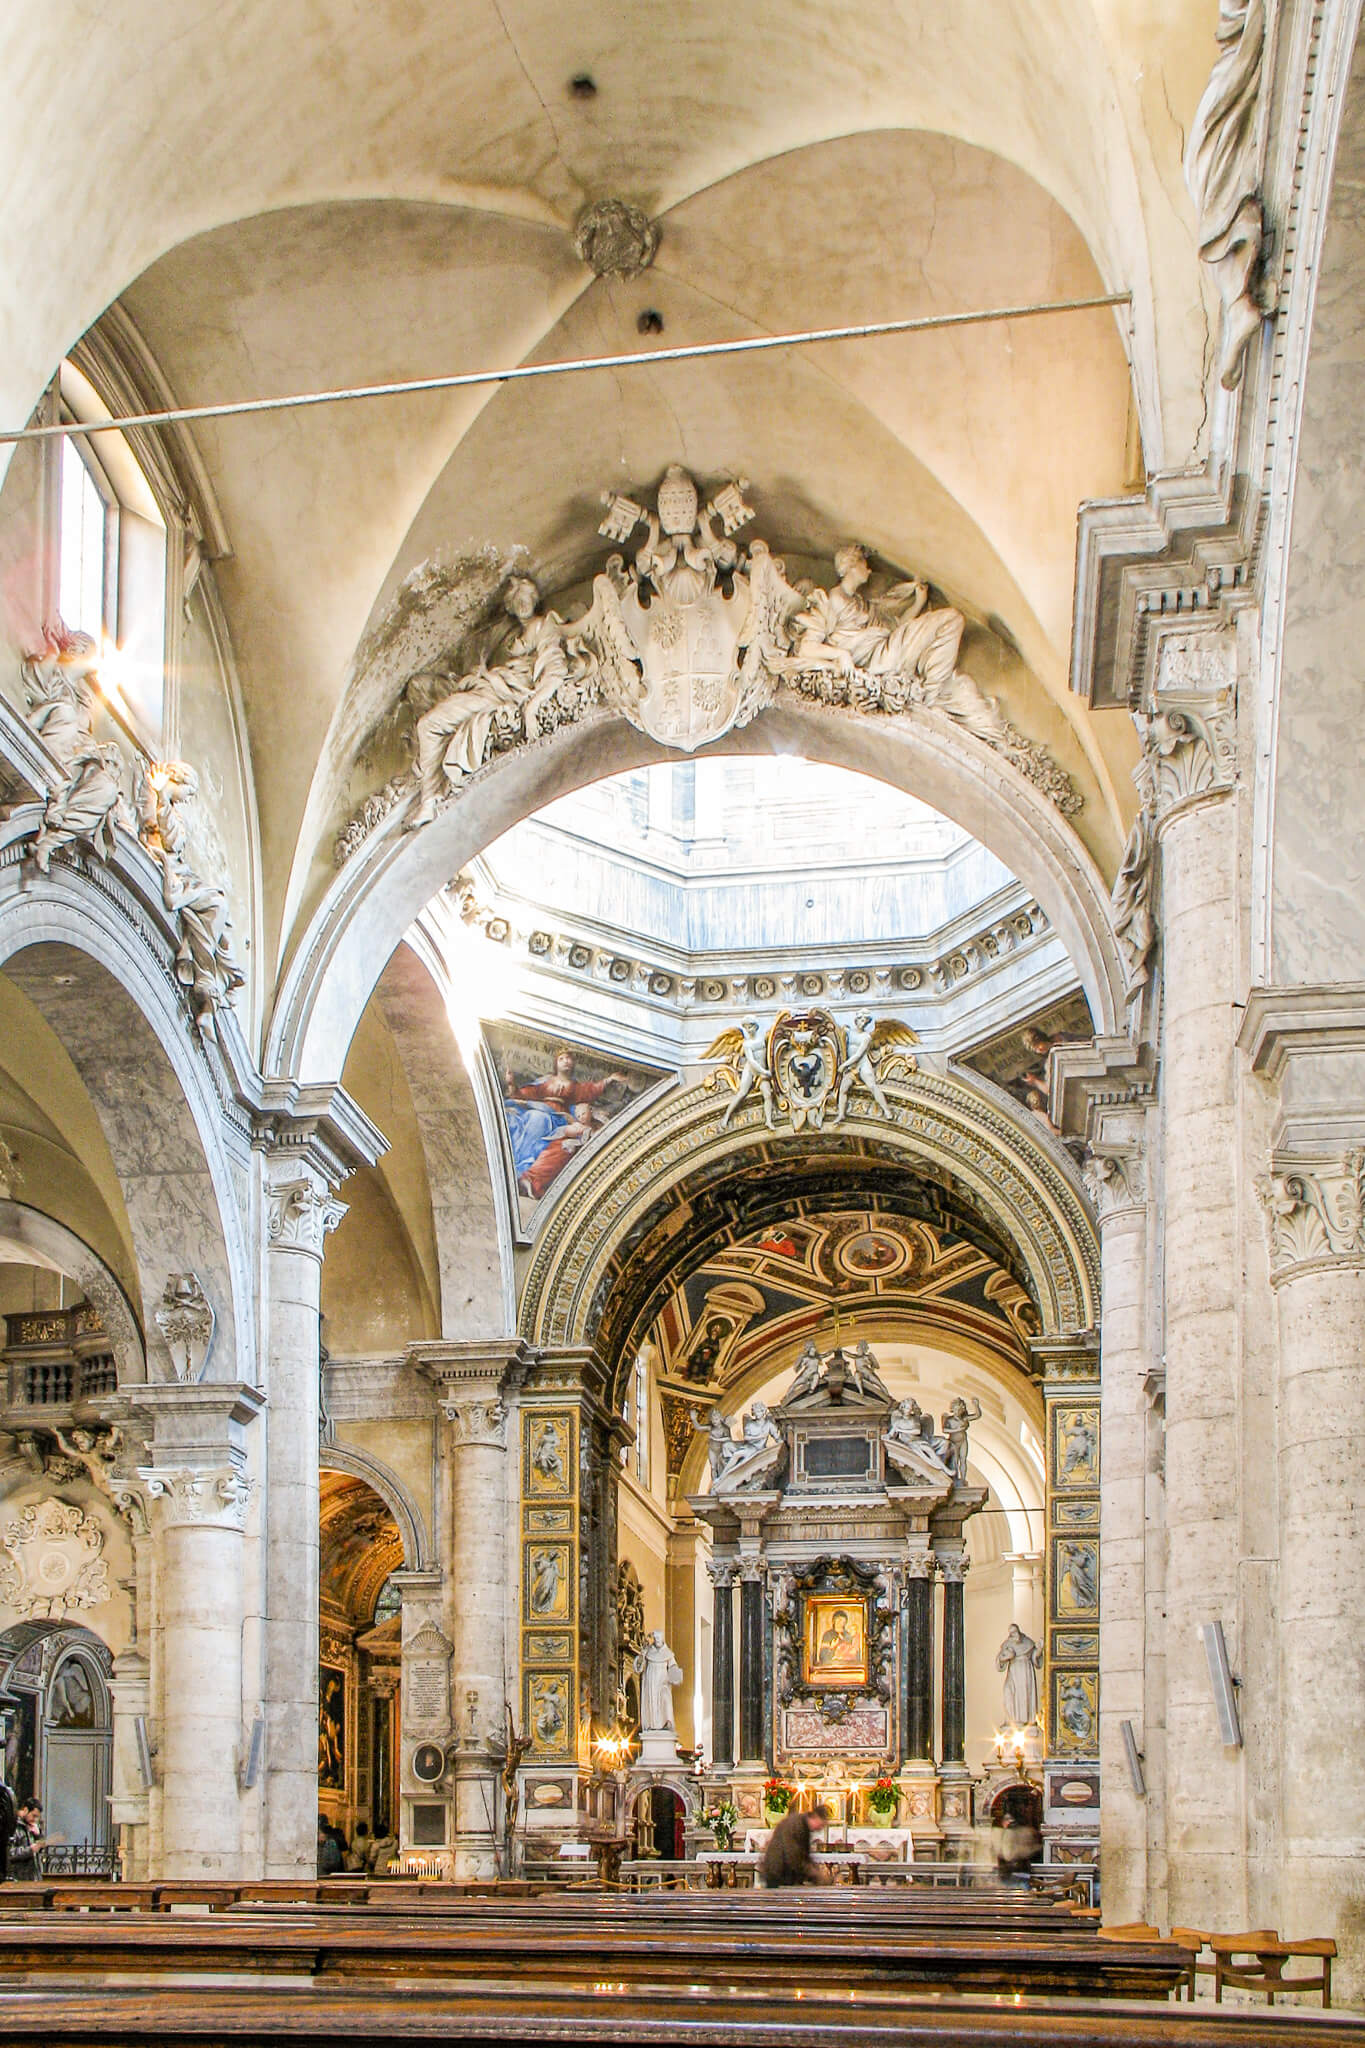 The interior and high altar of Santa Maria del Popolo